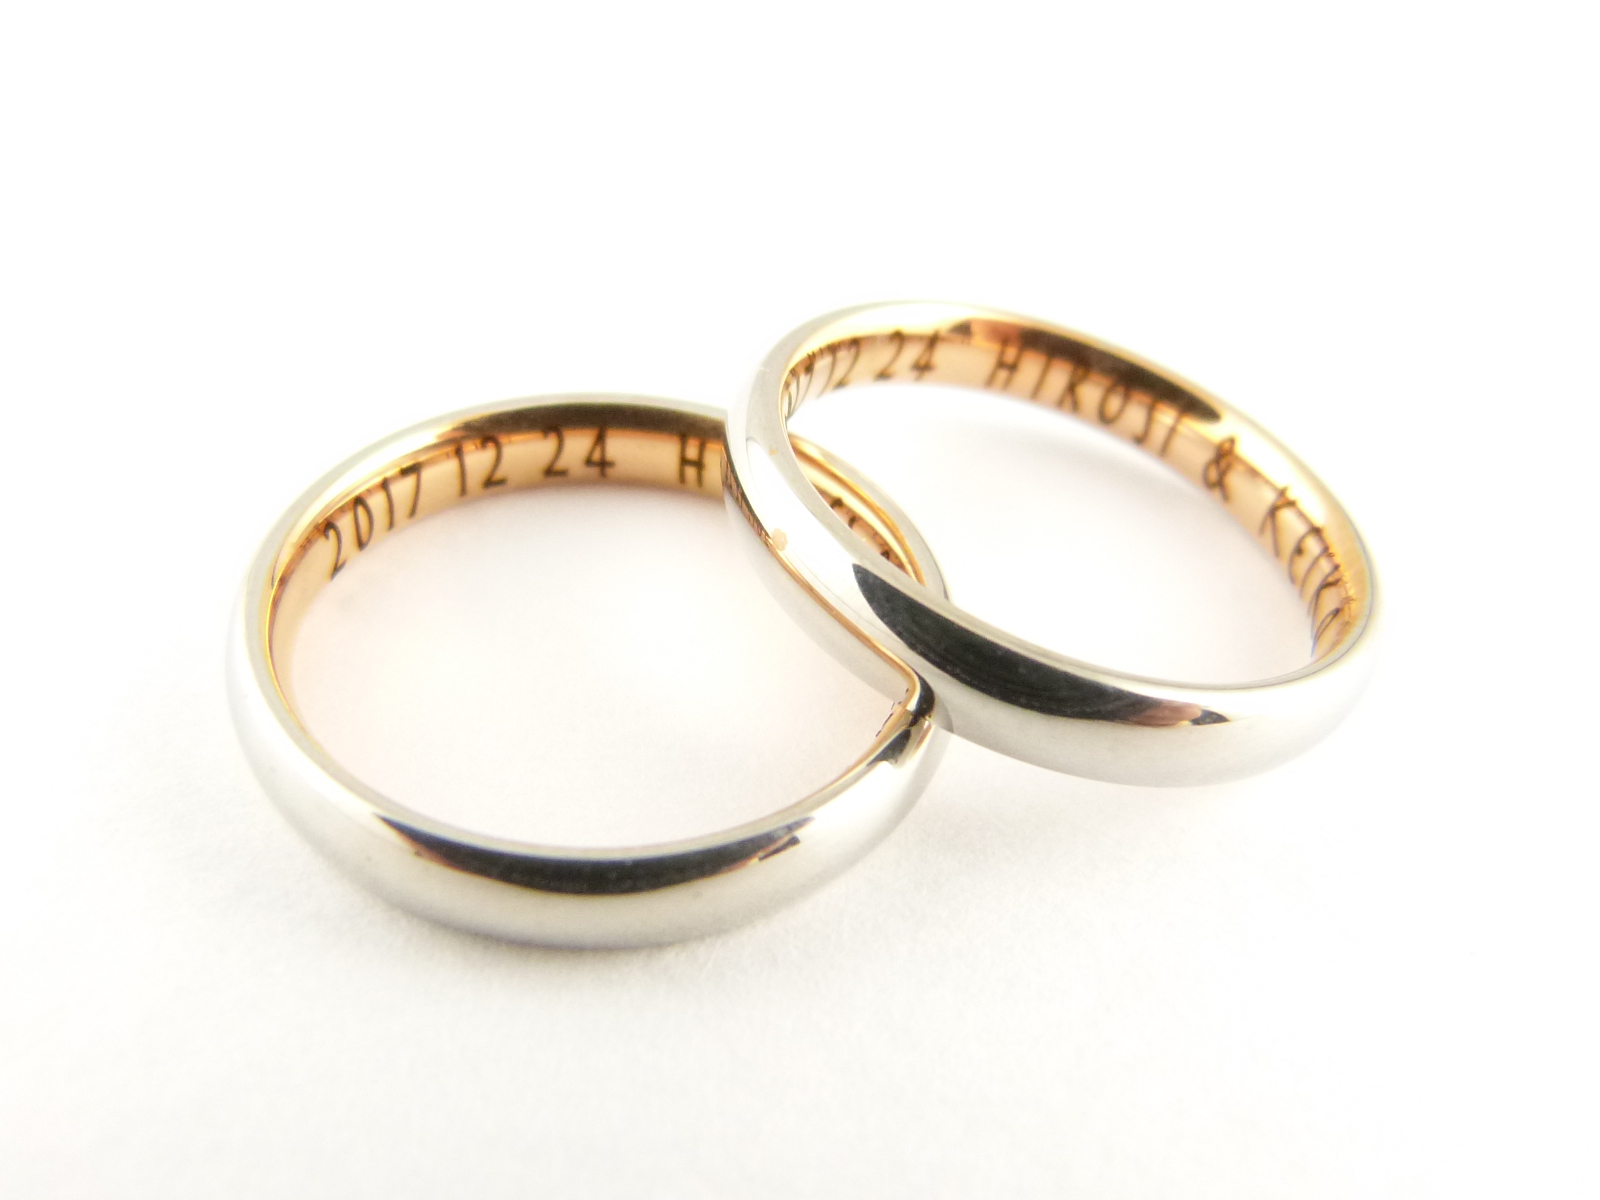 2本セット/刻印無料/316Lステンレス/内側がピンクゴールド色/月のうさぎ「ペアリング、結婚指輪」 | 坂の上宝飾